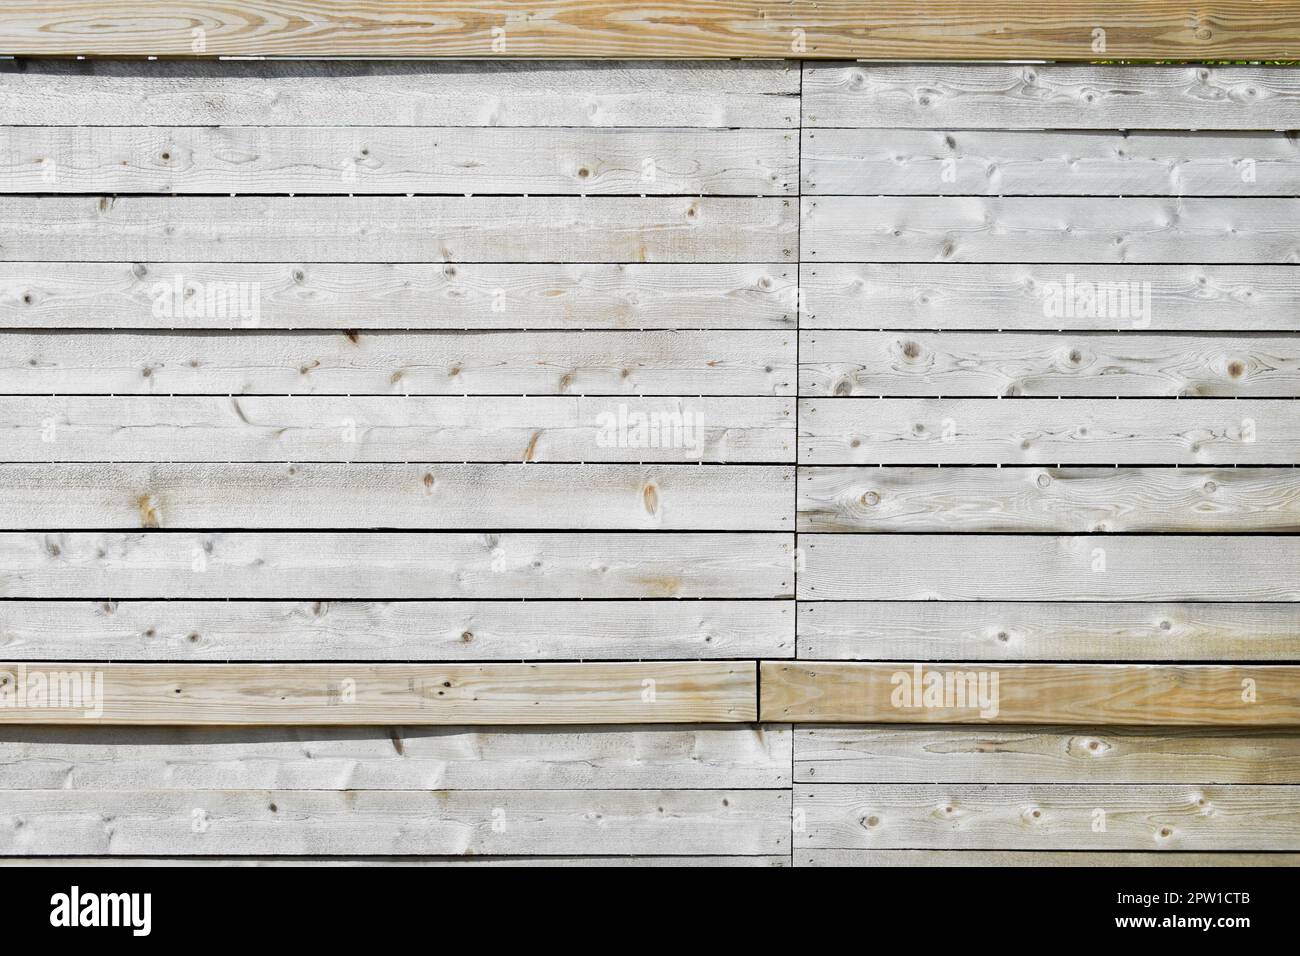 Horizontal weathered wood fence slats Stock Photo